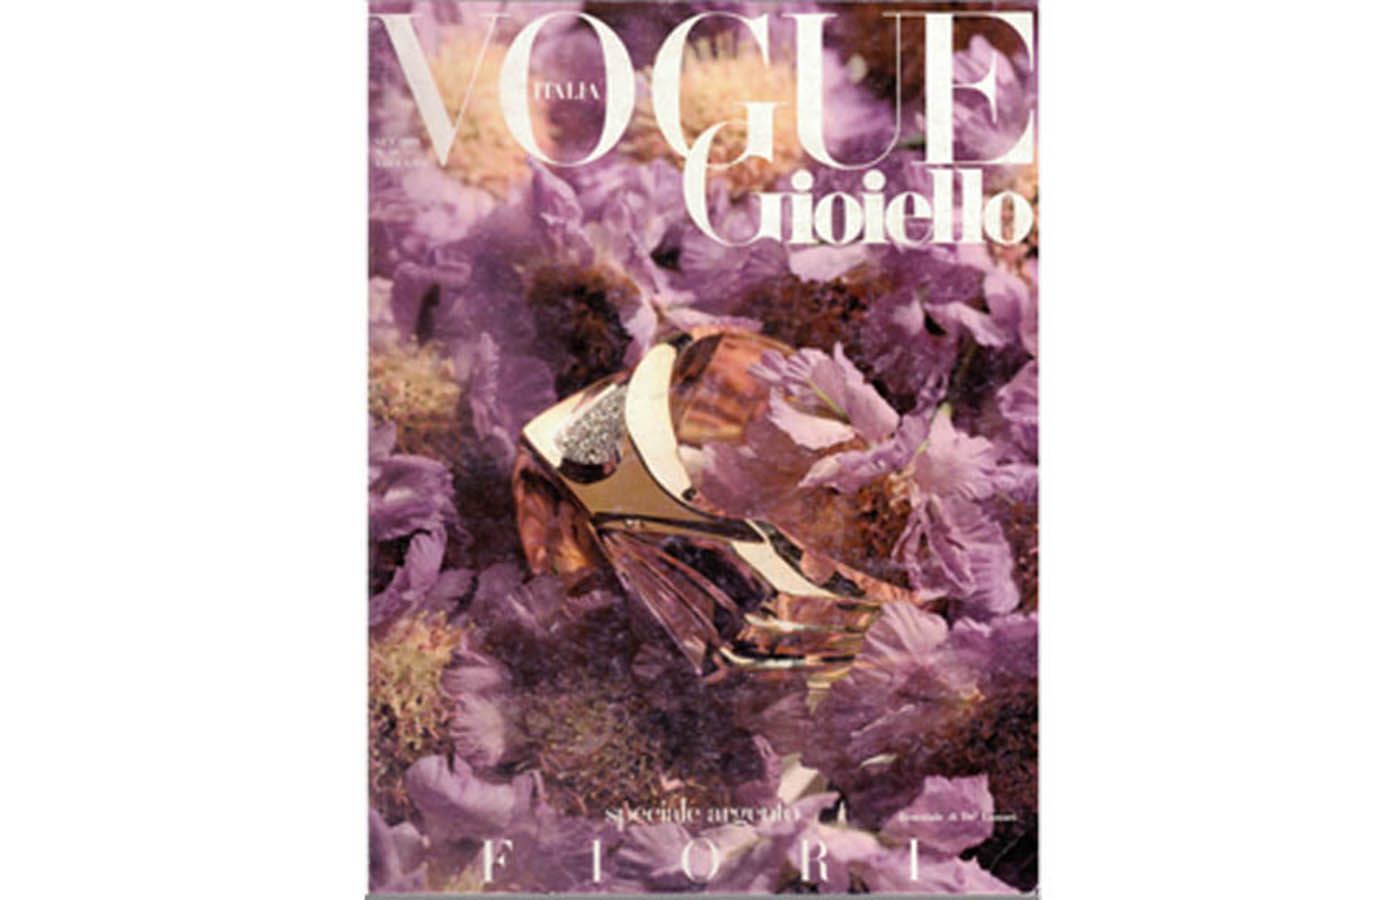 De' Lazzari-Oro Addosso on the cover of Vogue Italia from the late 1980s